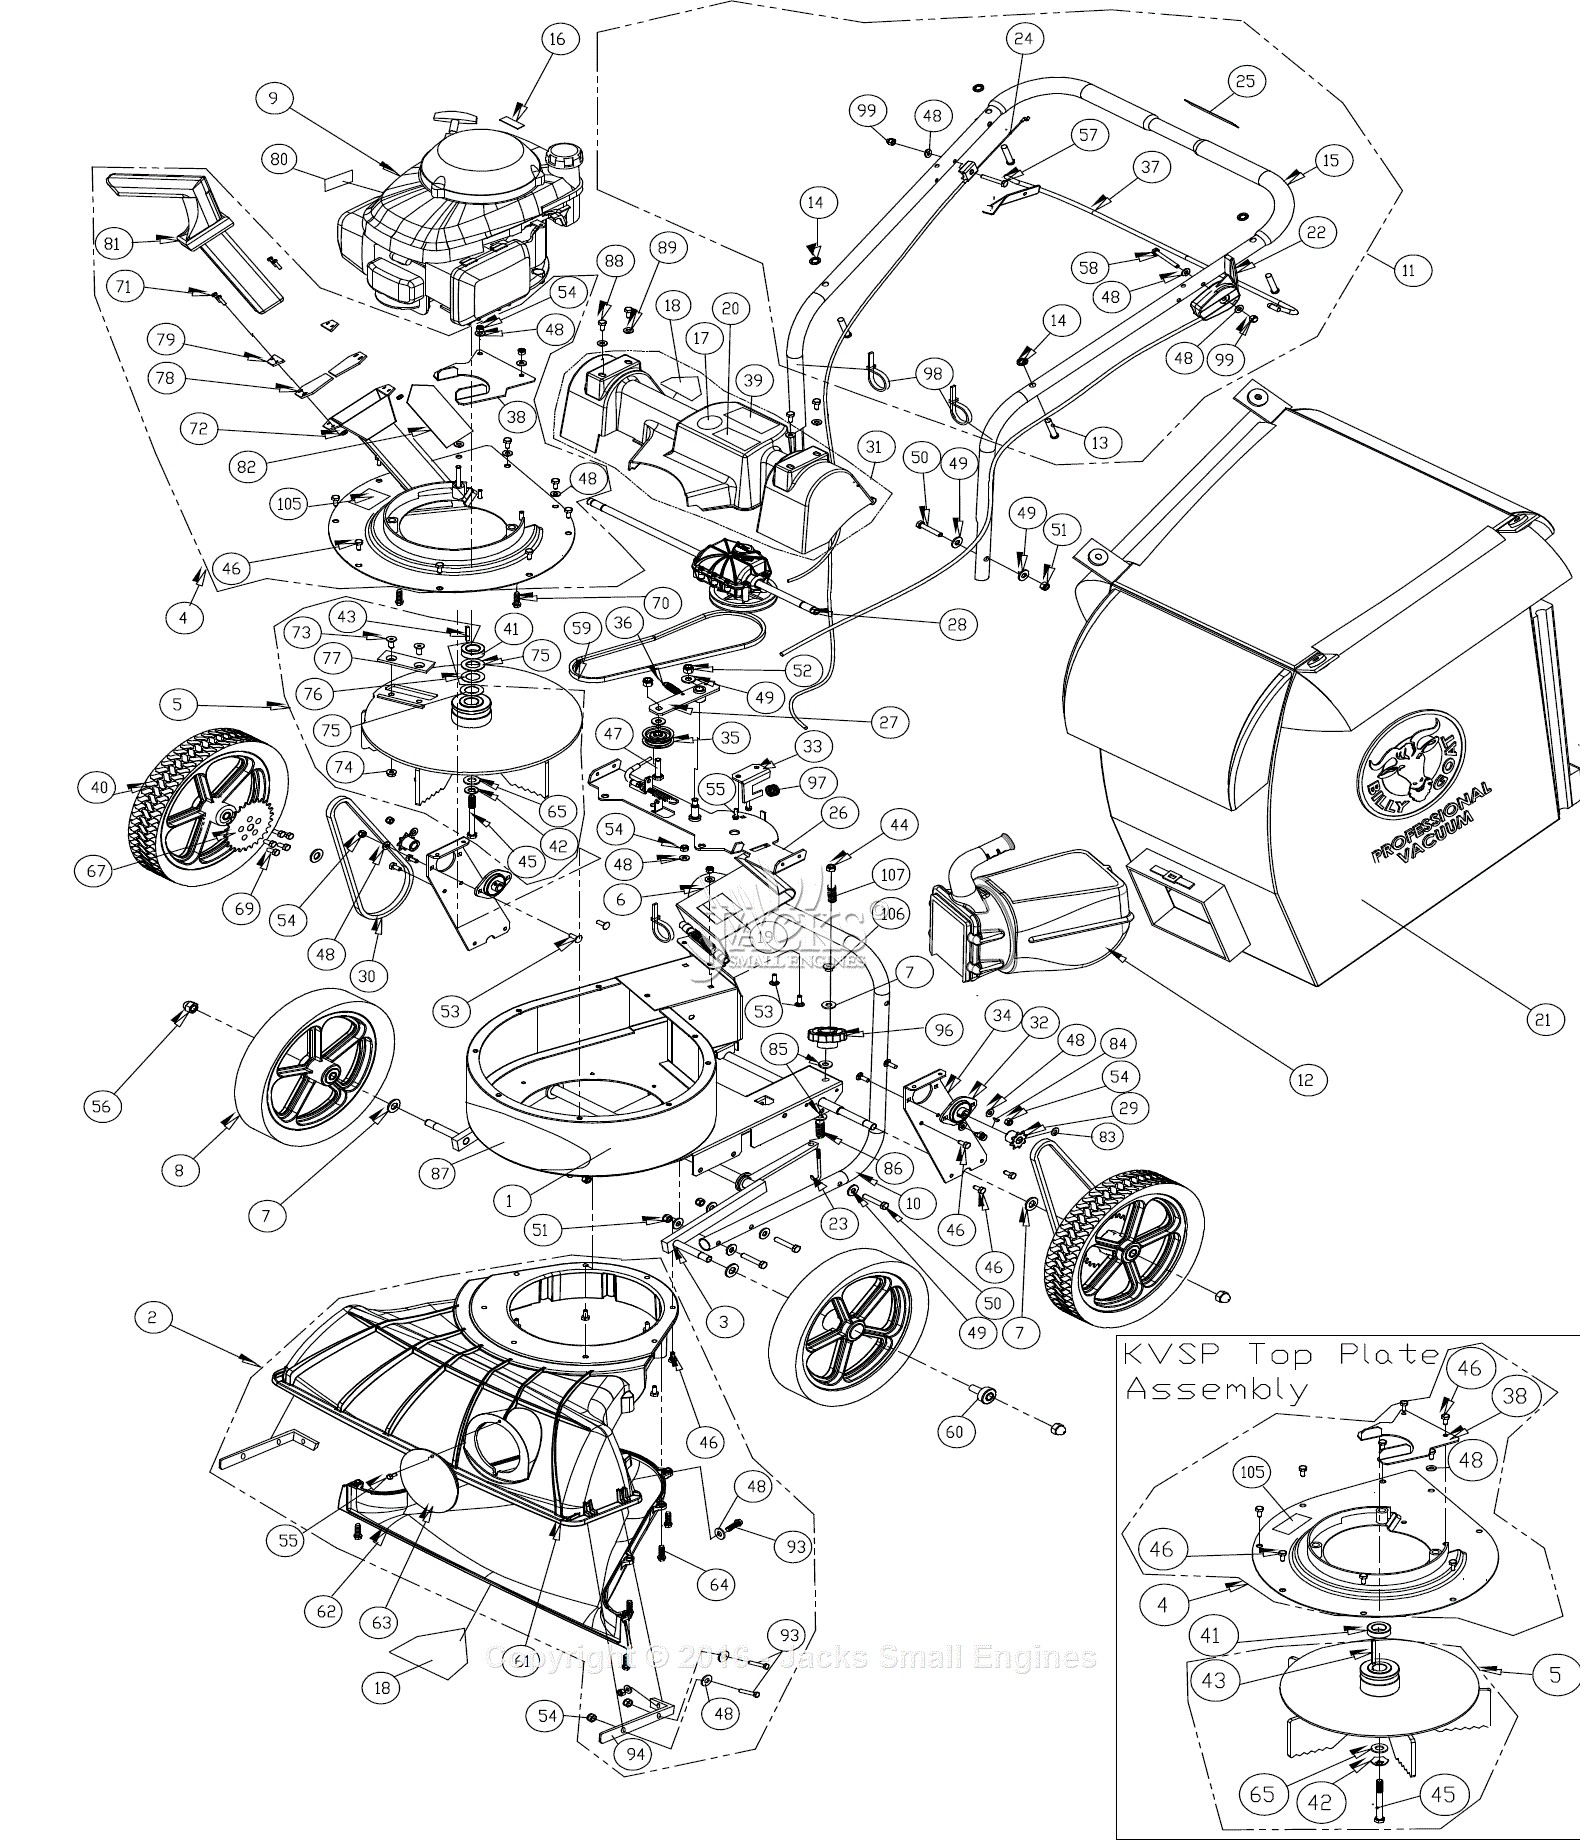 Honda Elite 80 Parts Diagram Billy Goat Tkv650sph Parts Diagram for Full assembly Of Honda Elite 80 Parts Diagram